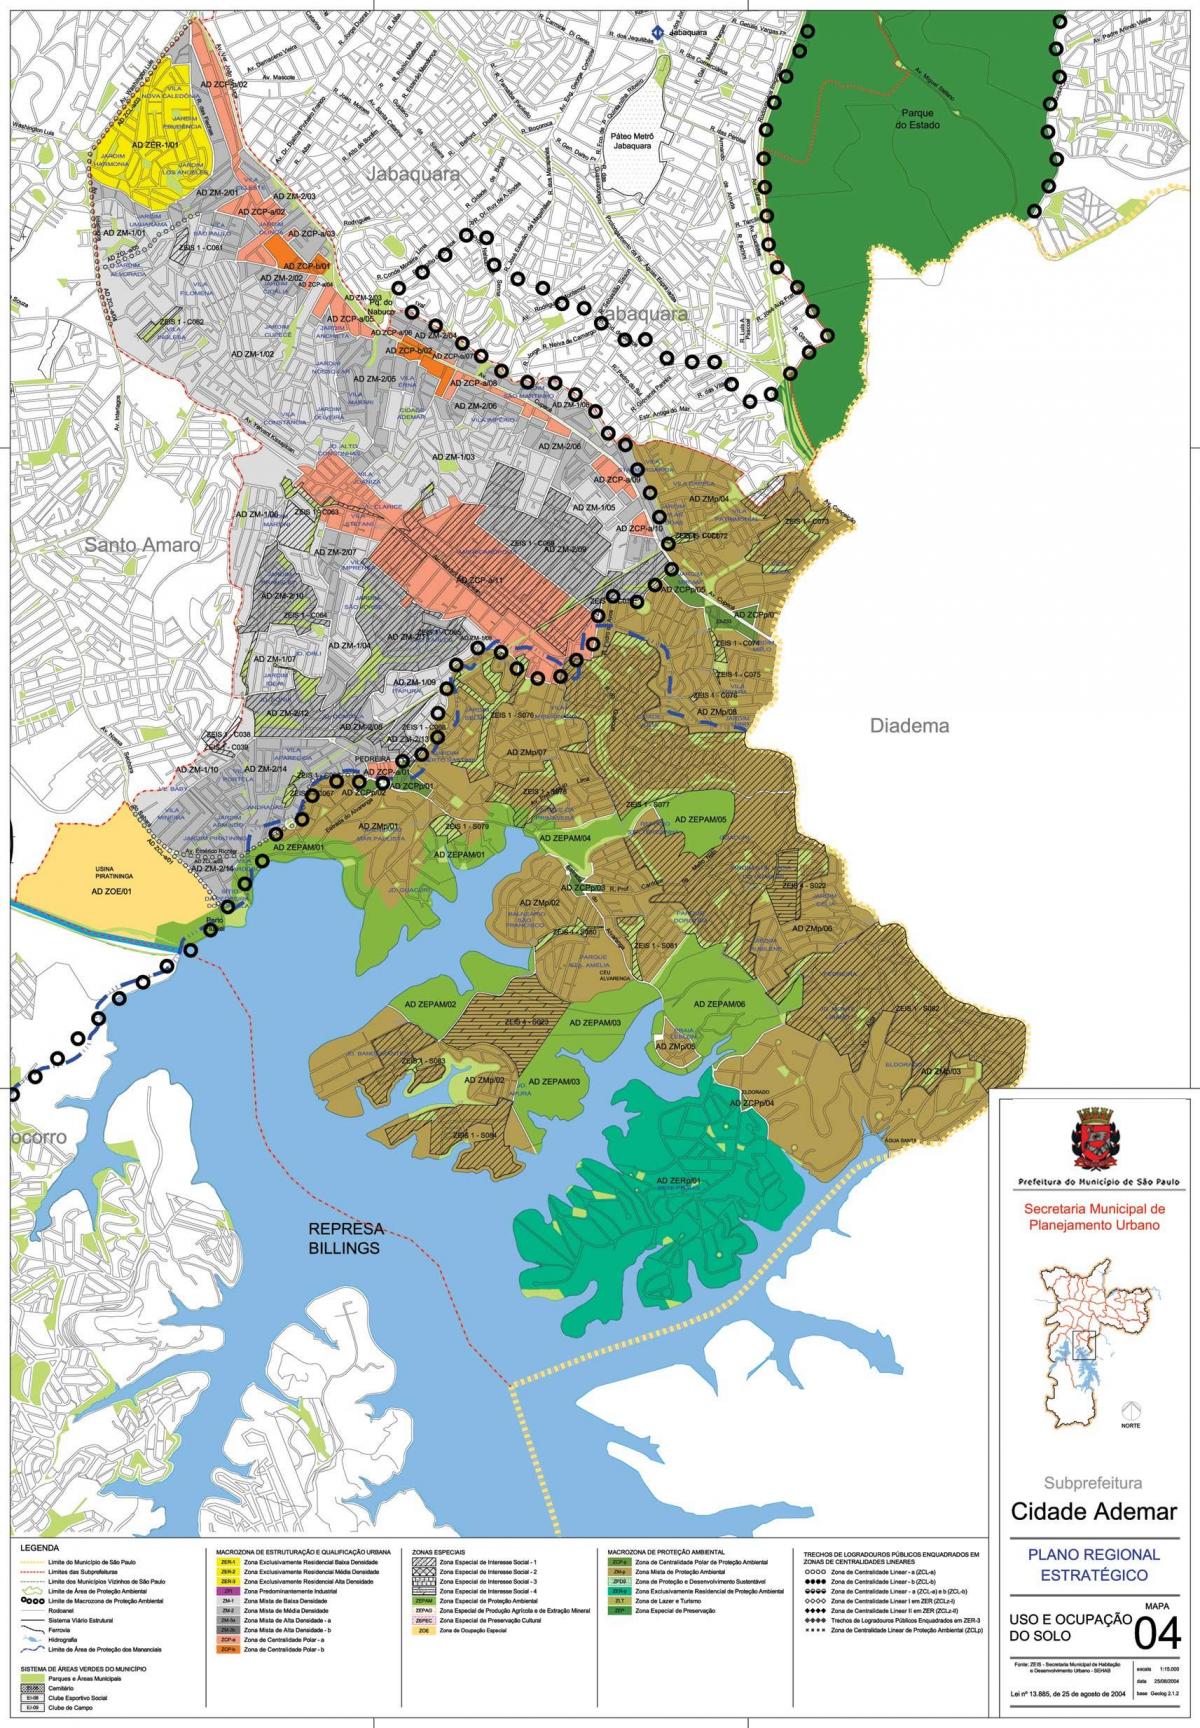 Peta dari Cidade Ademar Sao Paulo - Pendudukan tanah